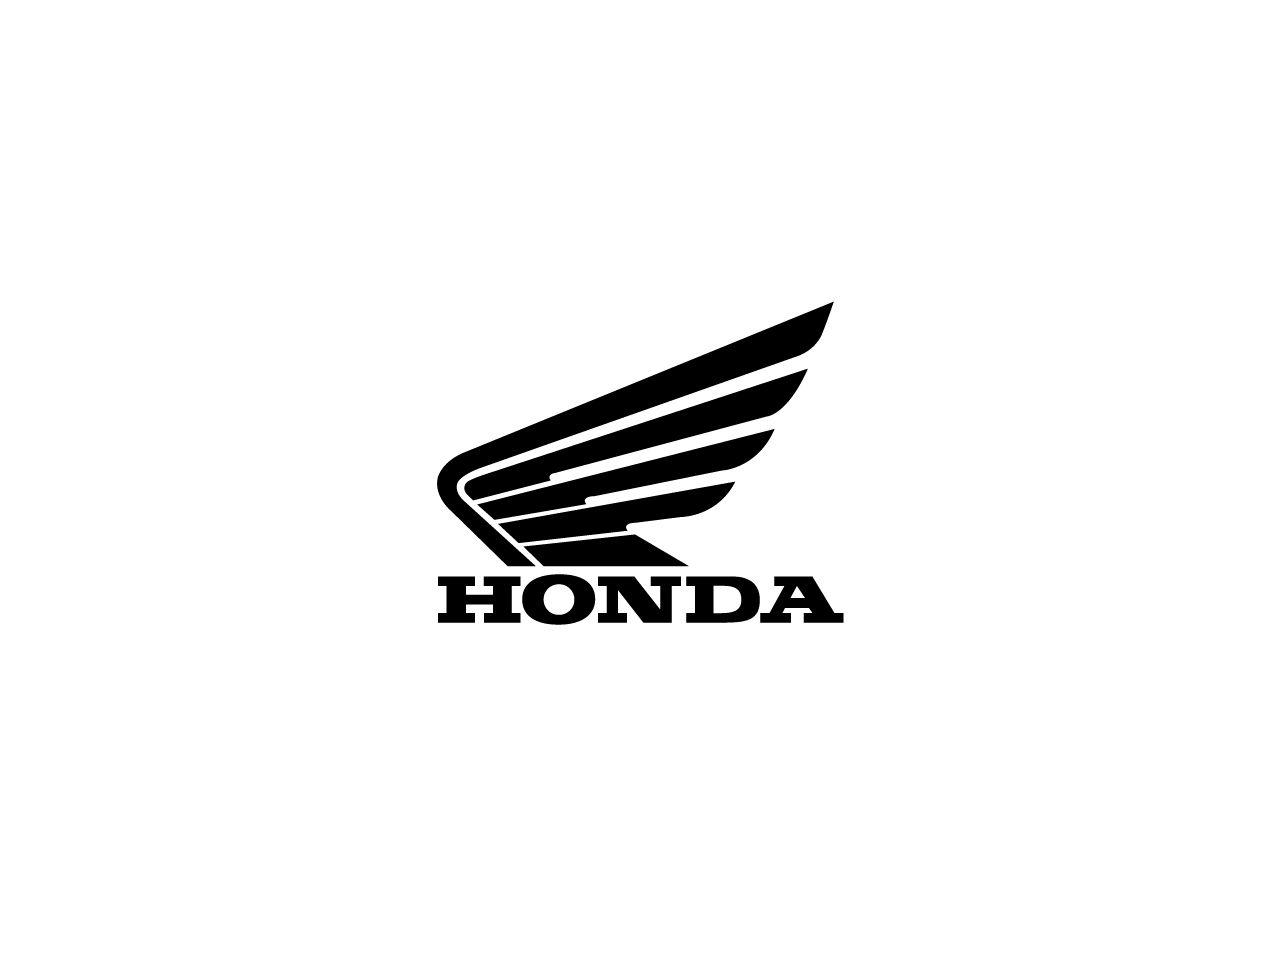 Honda ATV and Motorcycle Logo - Honda wing Logos